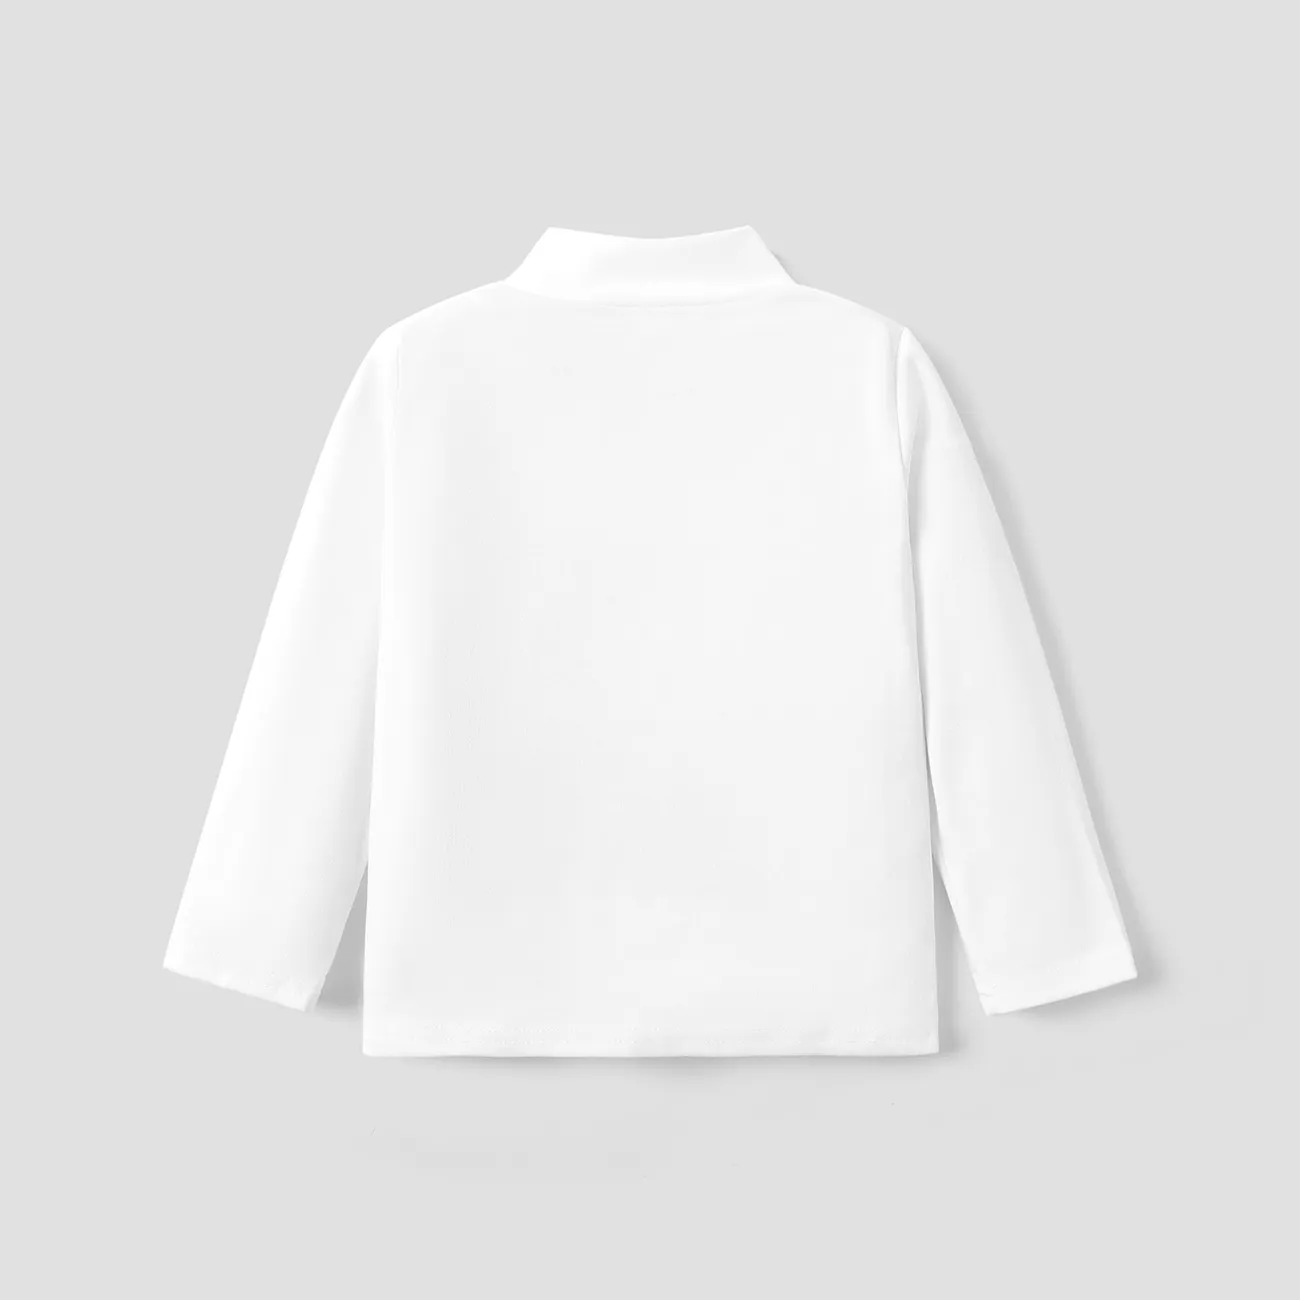 Enfant en bas âge Garçon Décontracté Manches longues T-Shirt Blanc big image 1